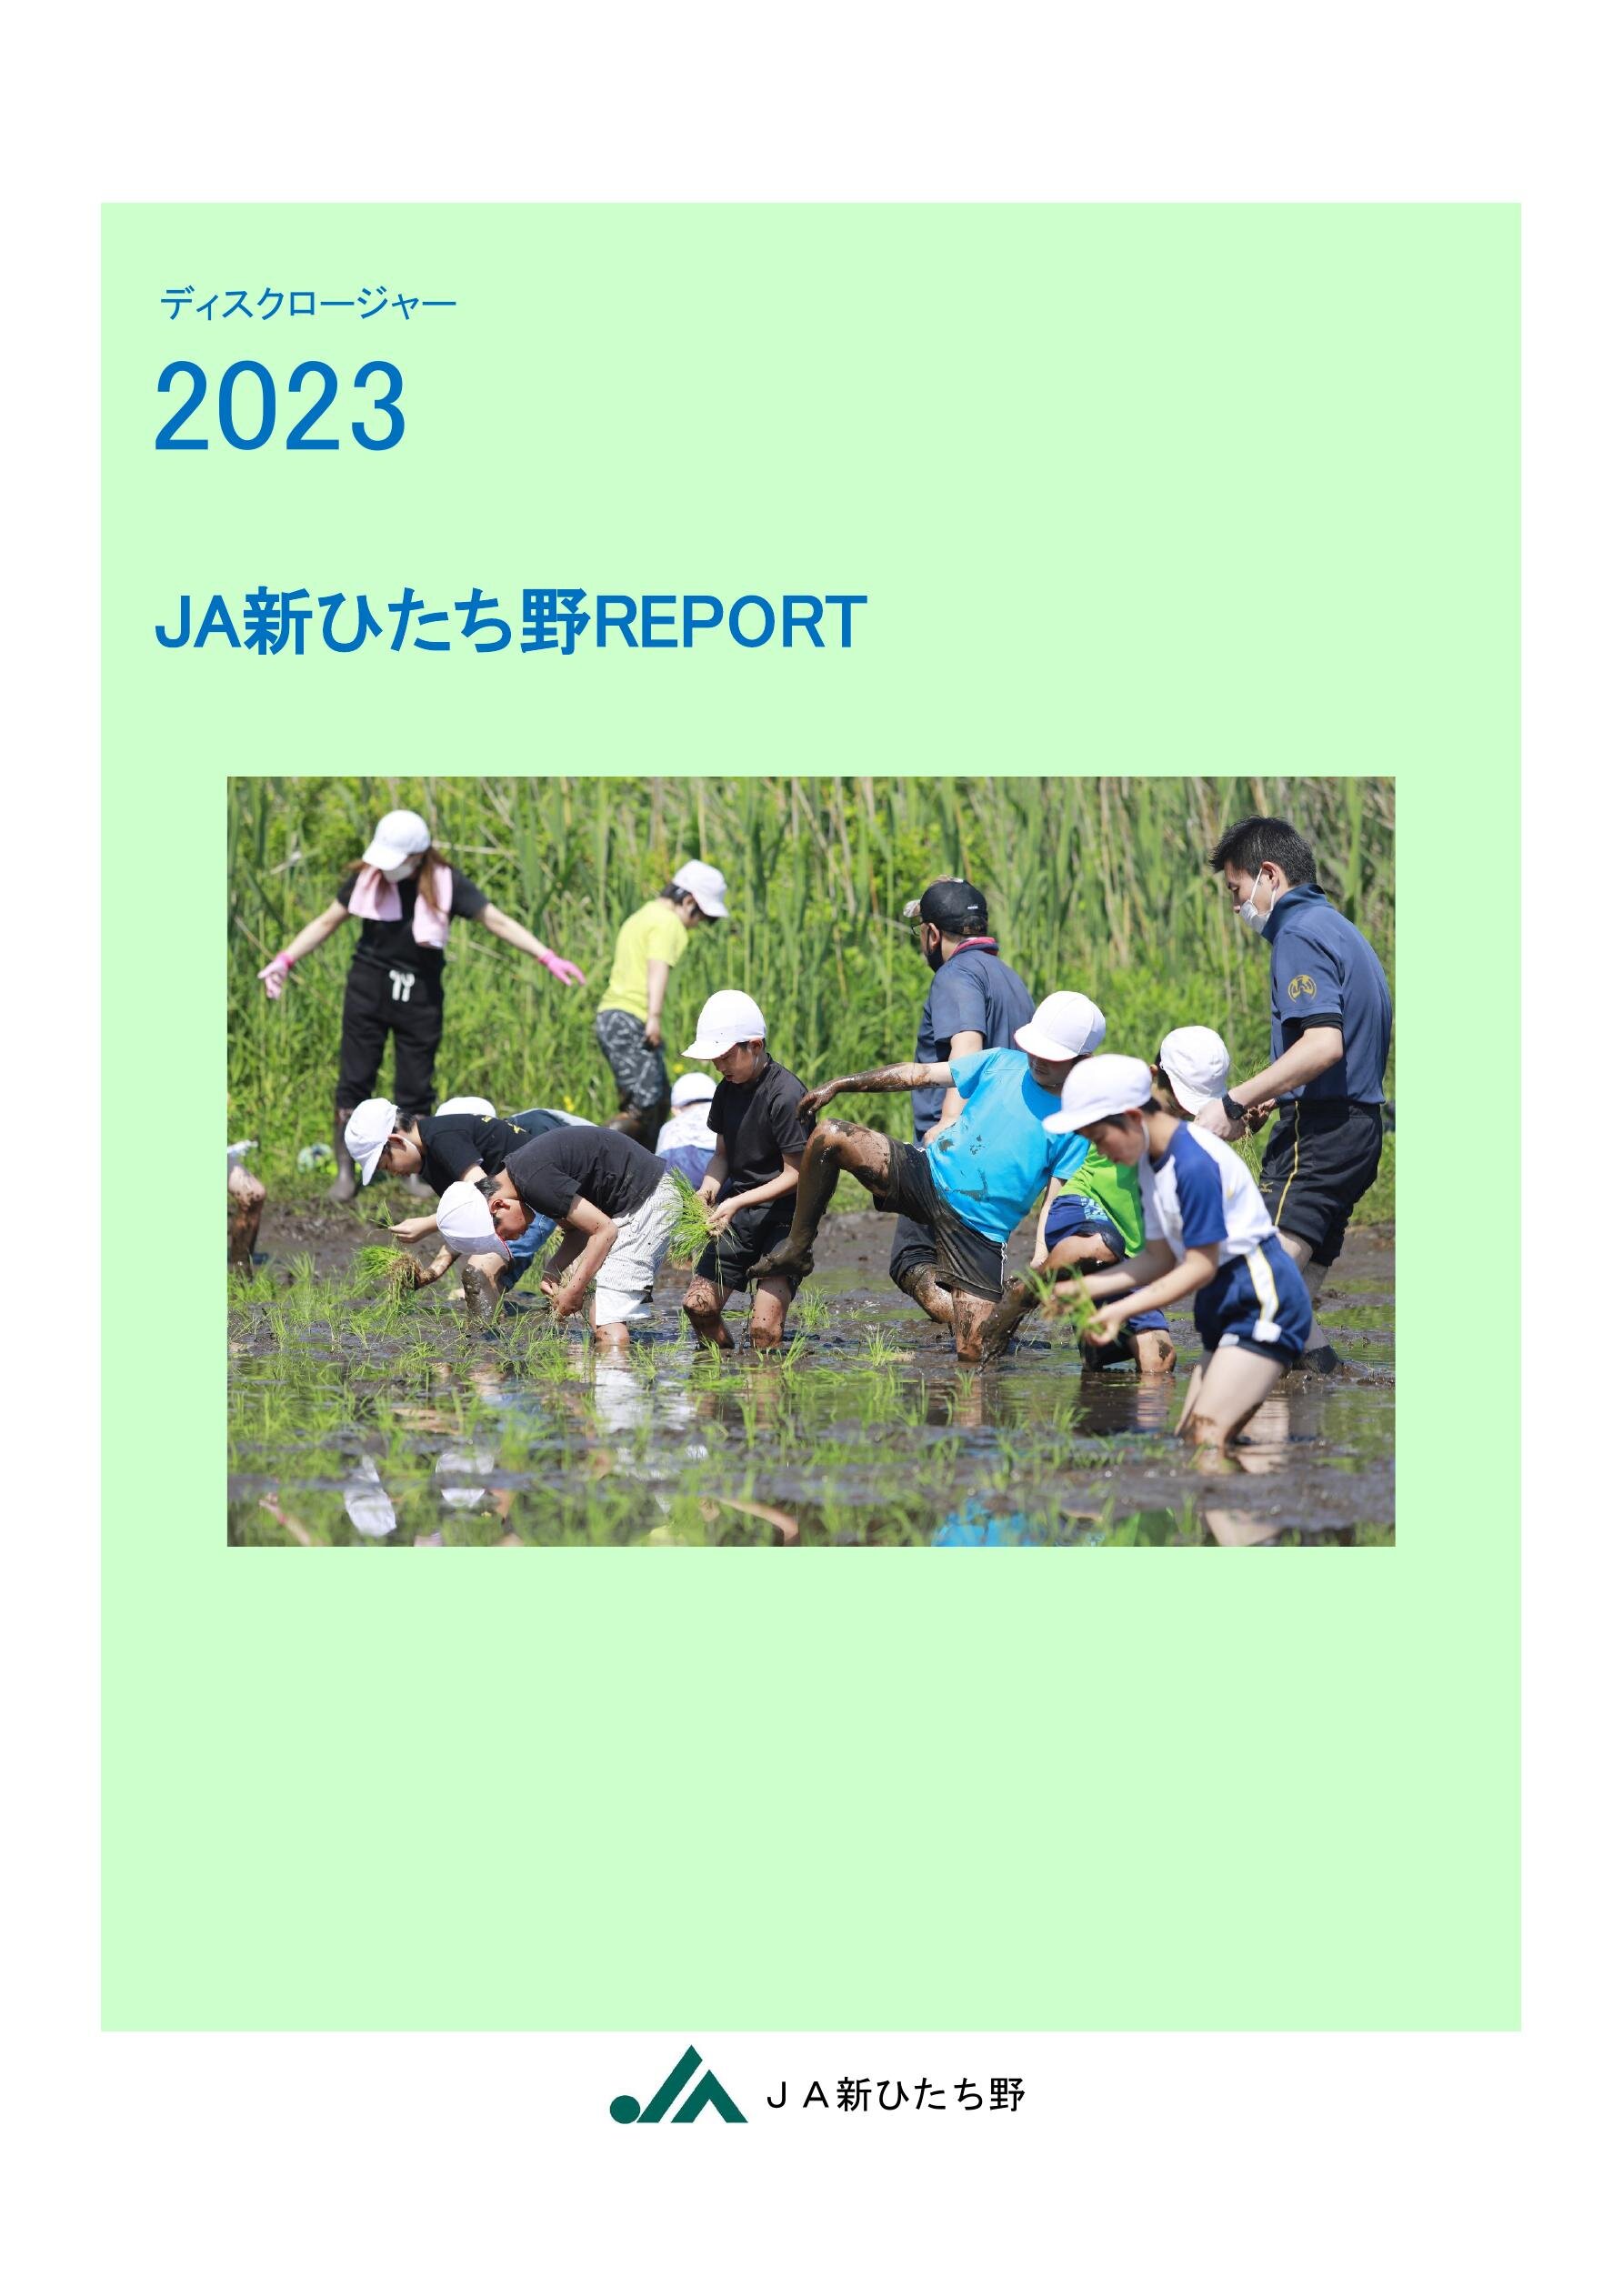 ディスクロージャー2023 JA新ひたち野REPORT